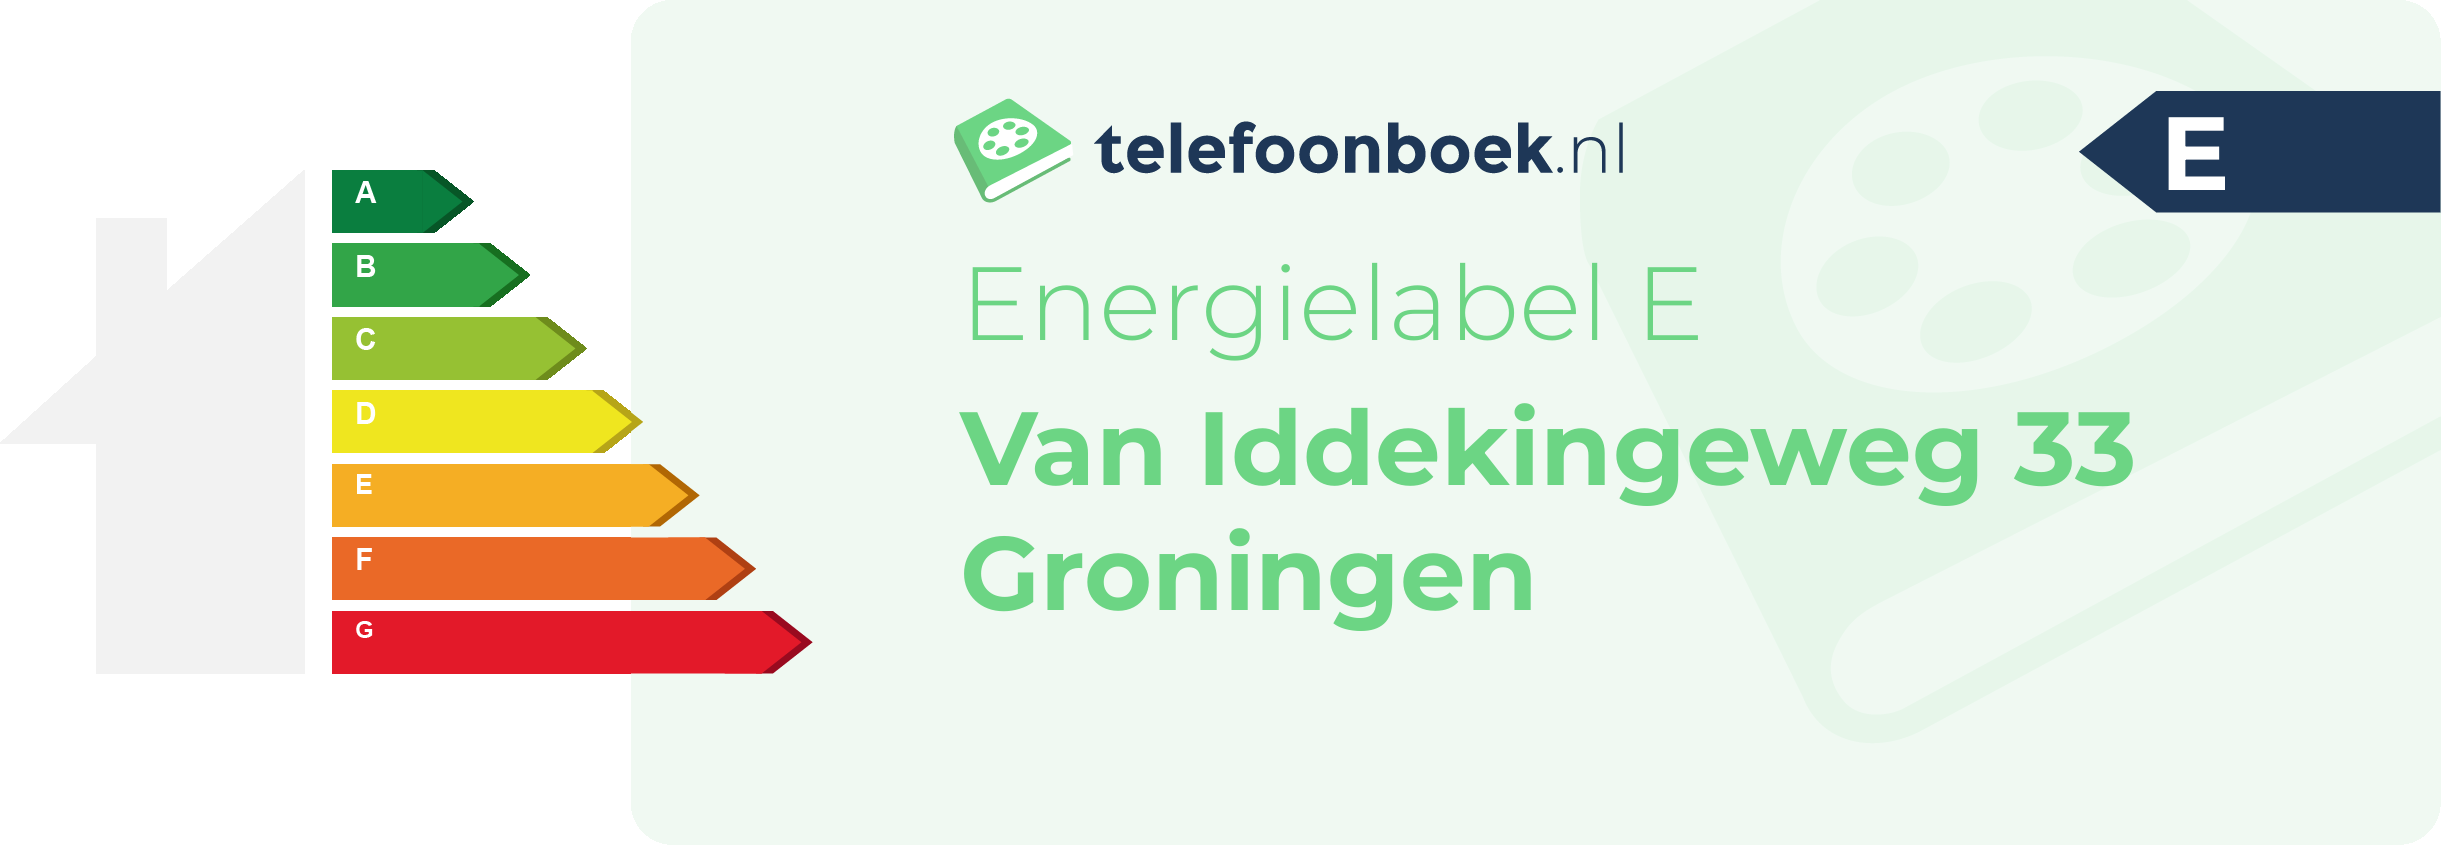 Energielabel Van Iddekingeweg 33 Groningen